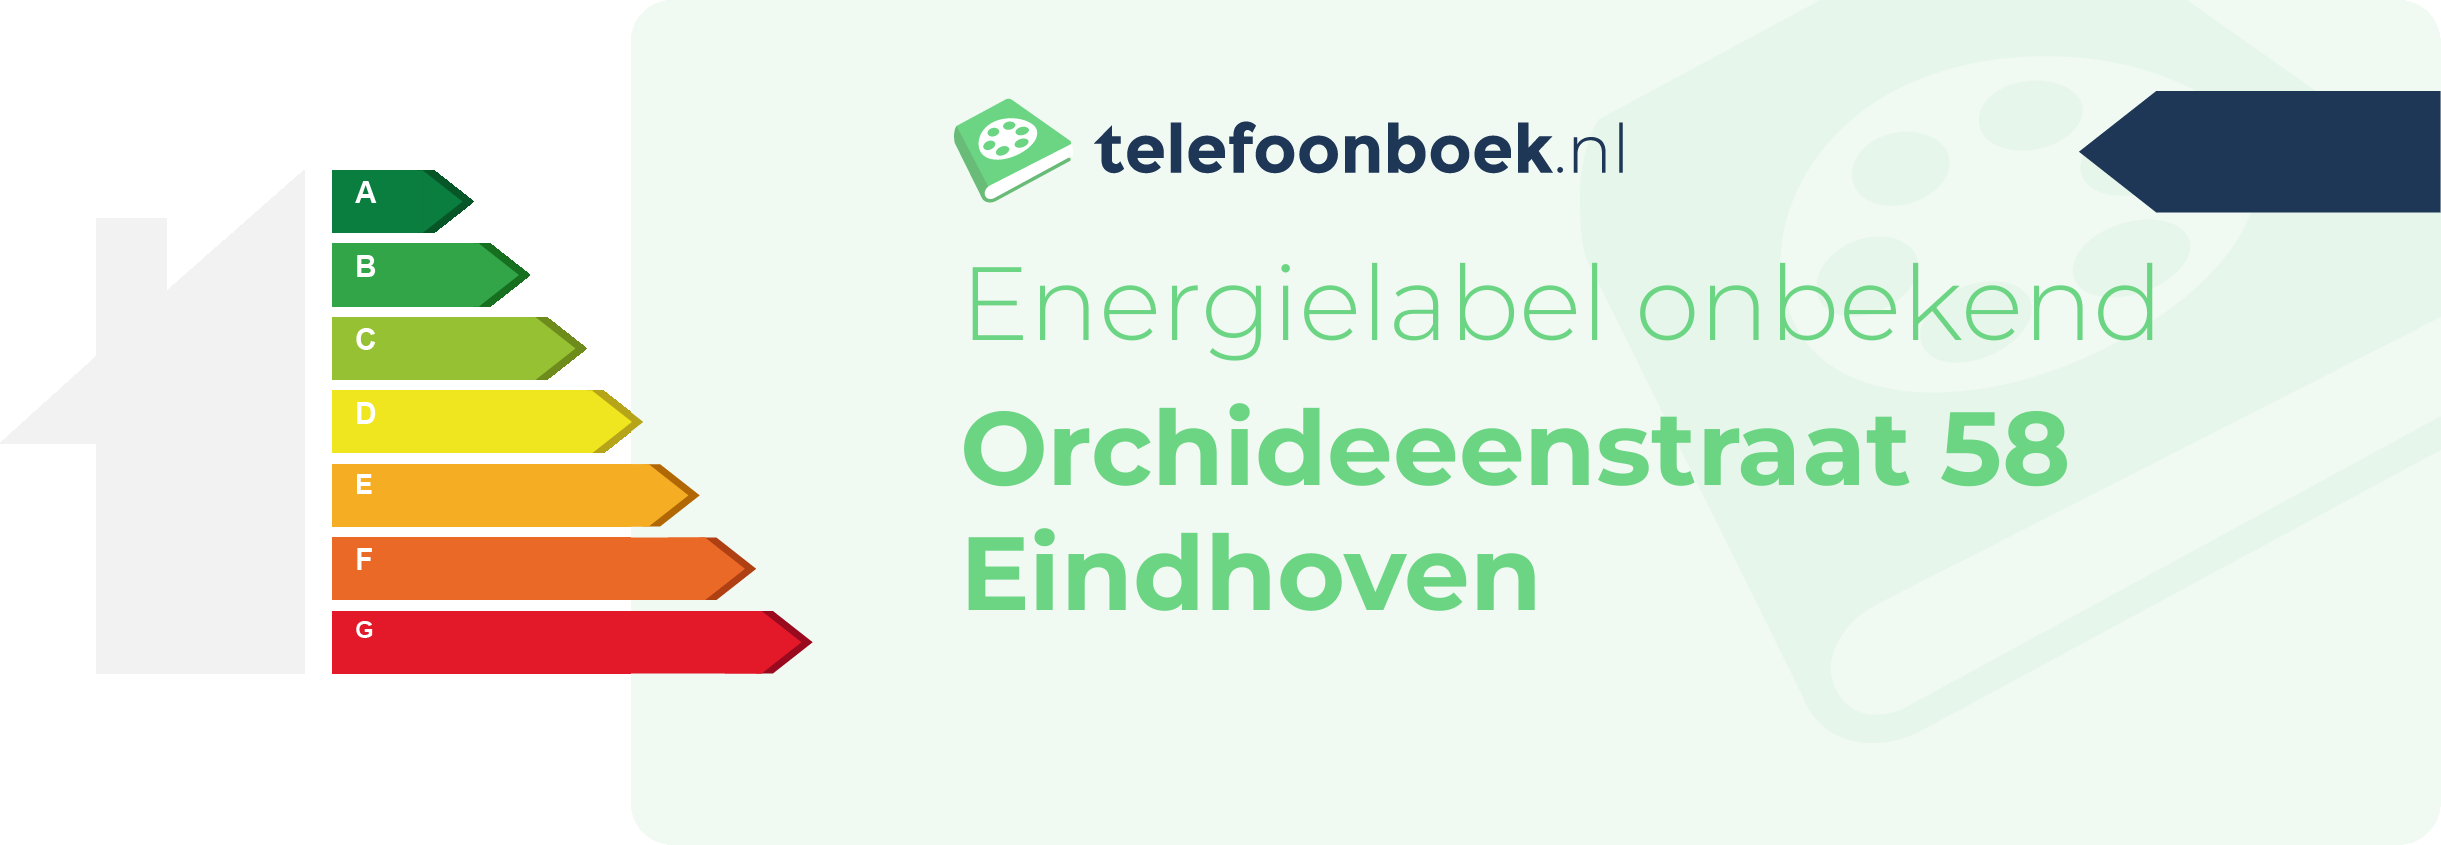 Energielabel Orchideeenstraat 58 Eindhoven